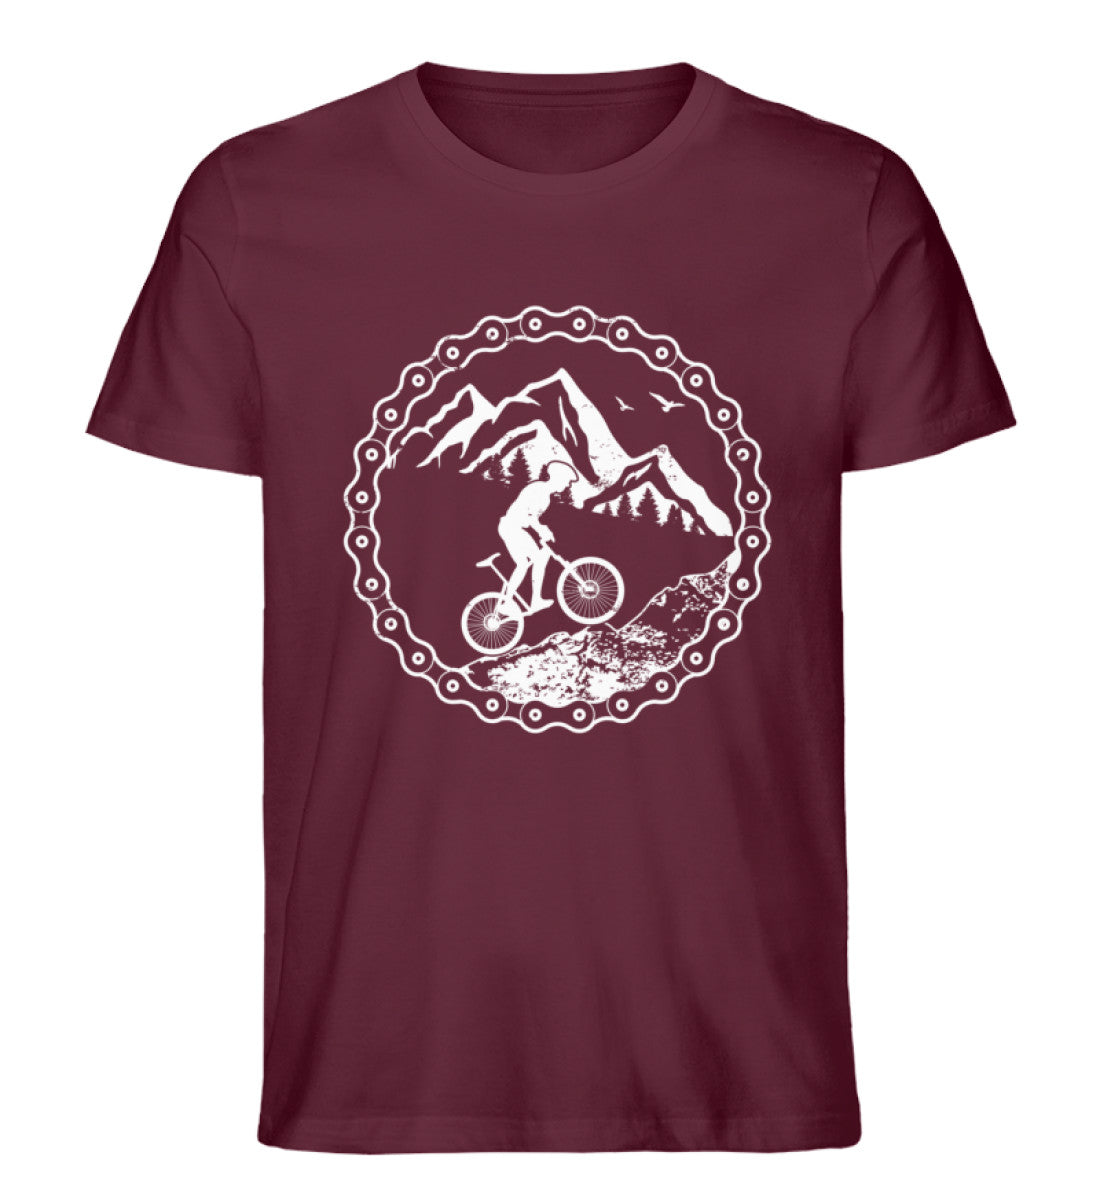 Uphill Mountainbiken - Herren Premium Organic T-Shirt Weinrot